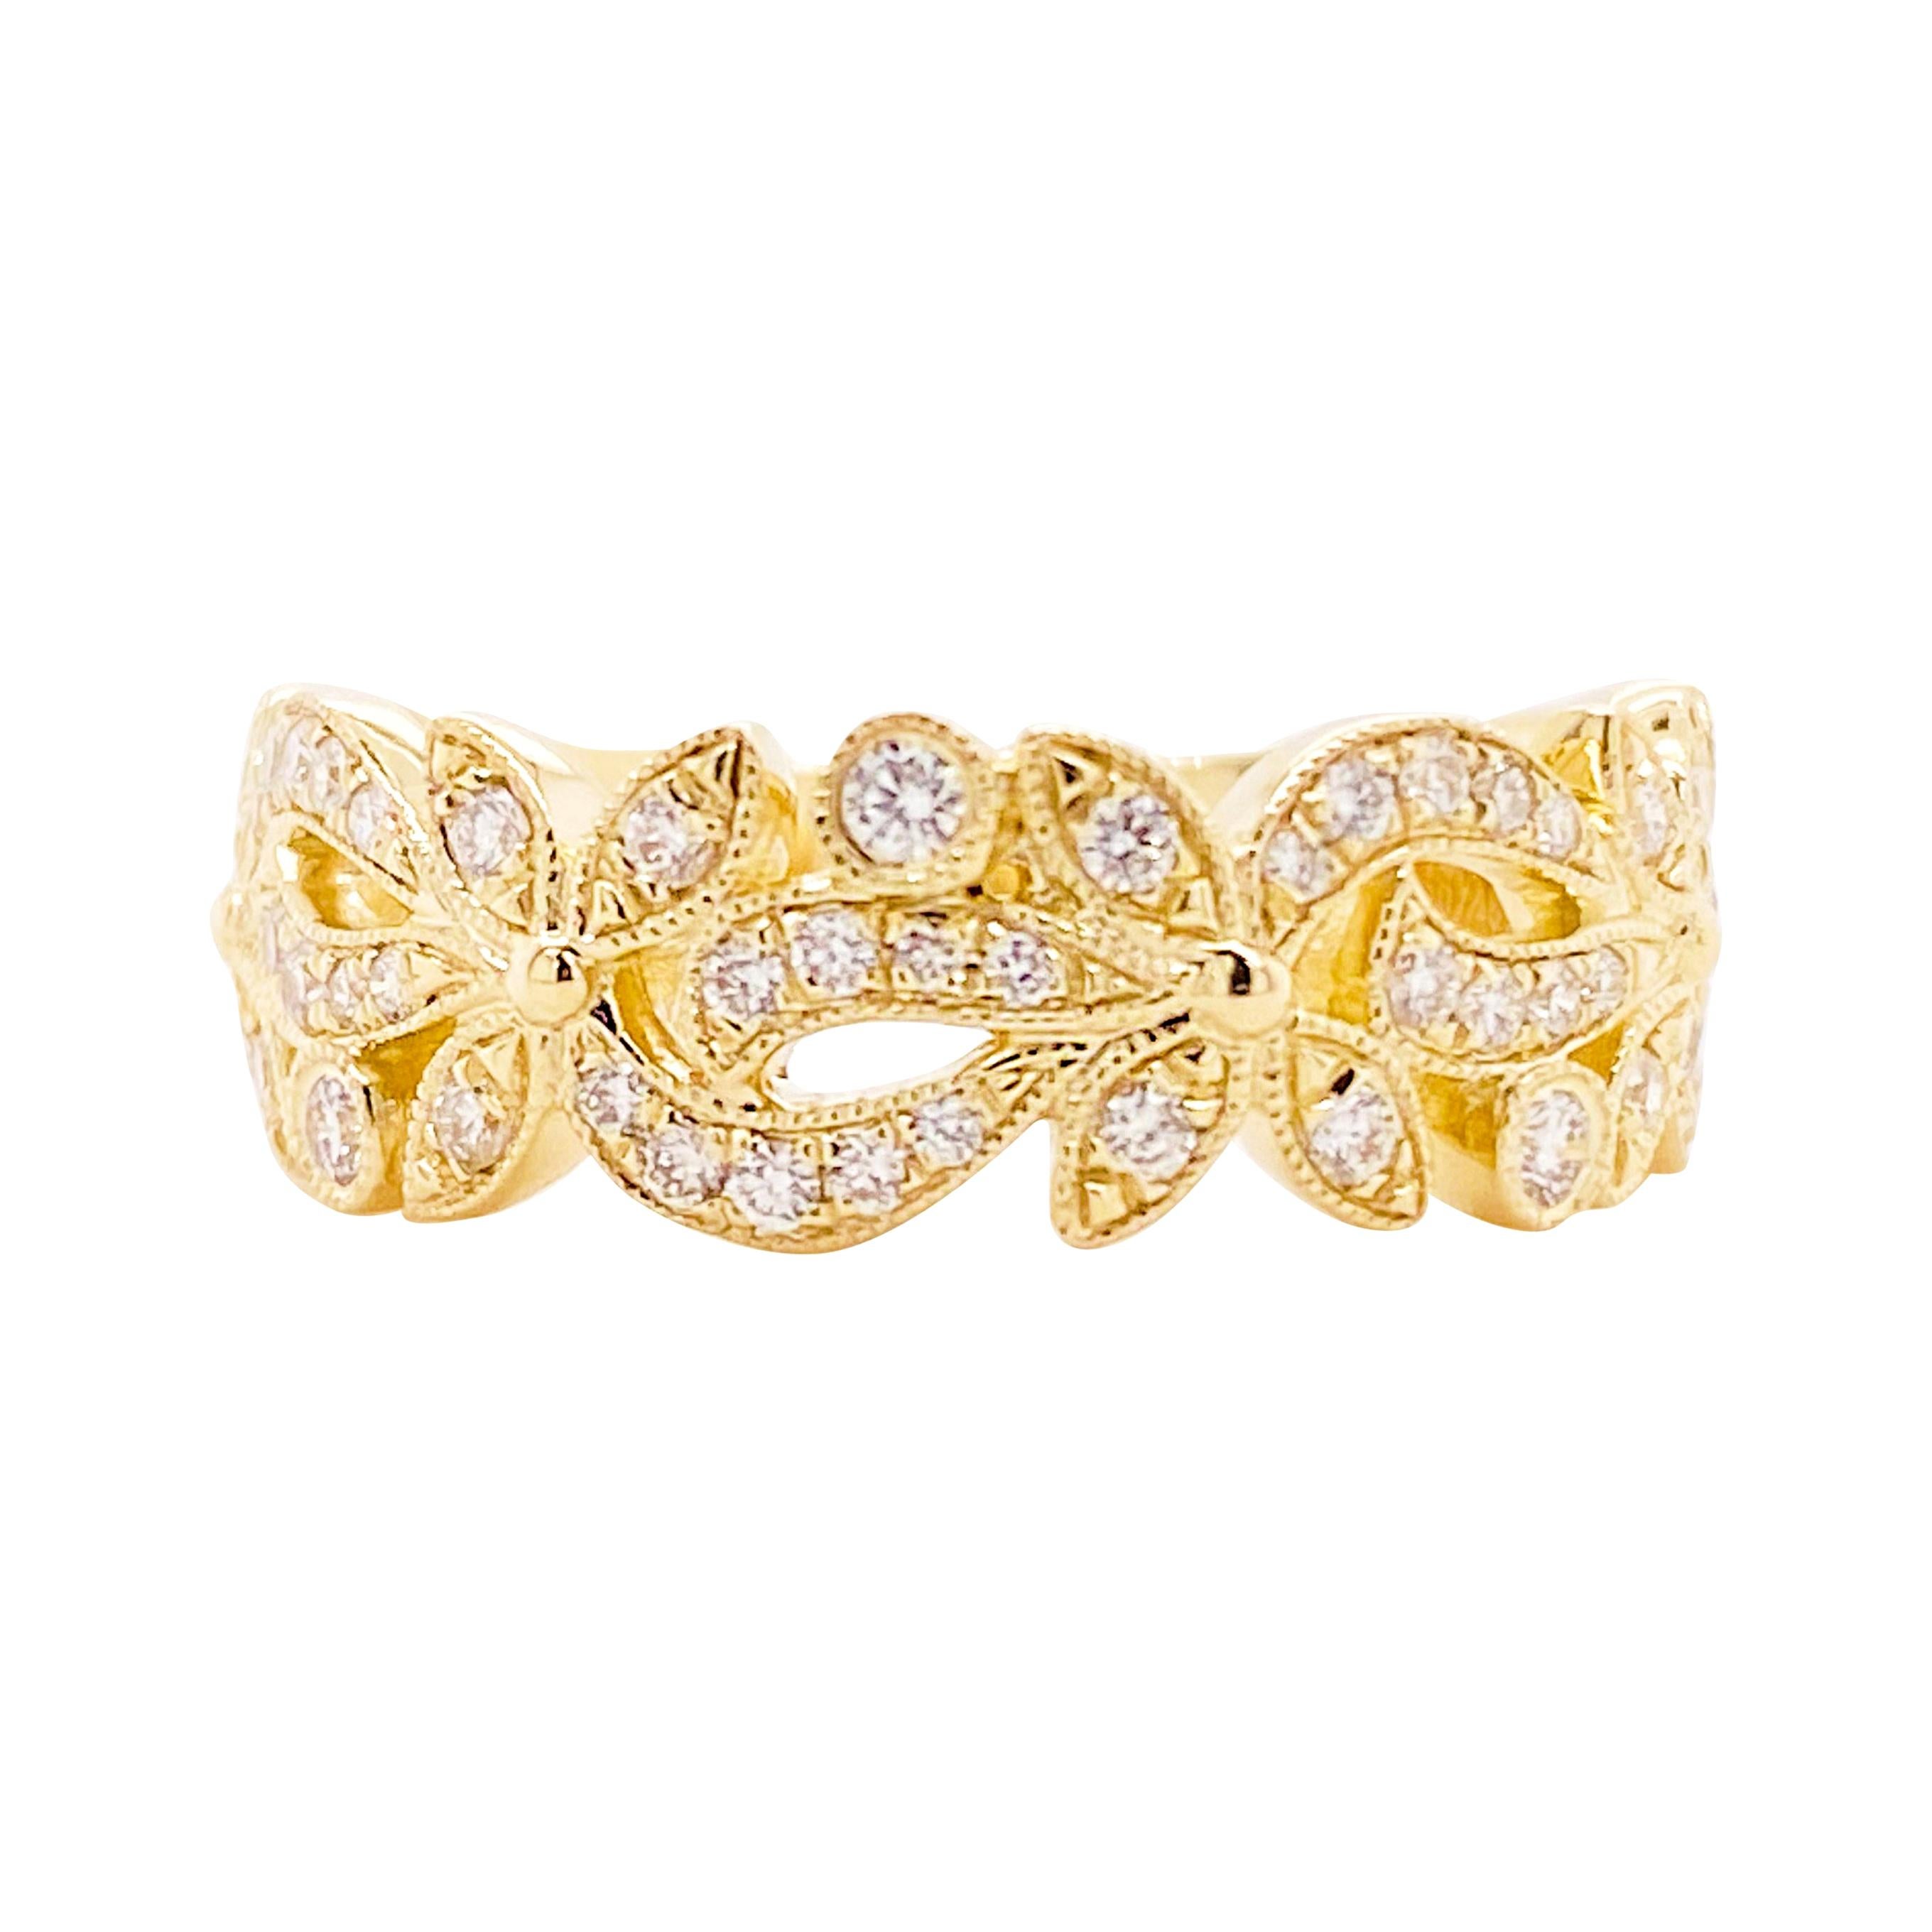 Diamond Flower Ring, 14 Karat Gold Floral Inspired Stackable Band, LR9229Y45JJ